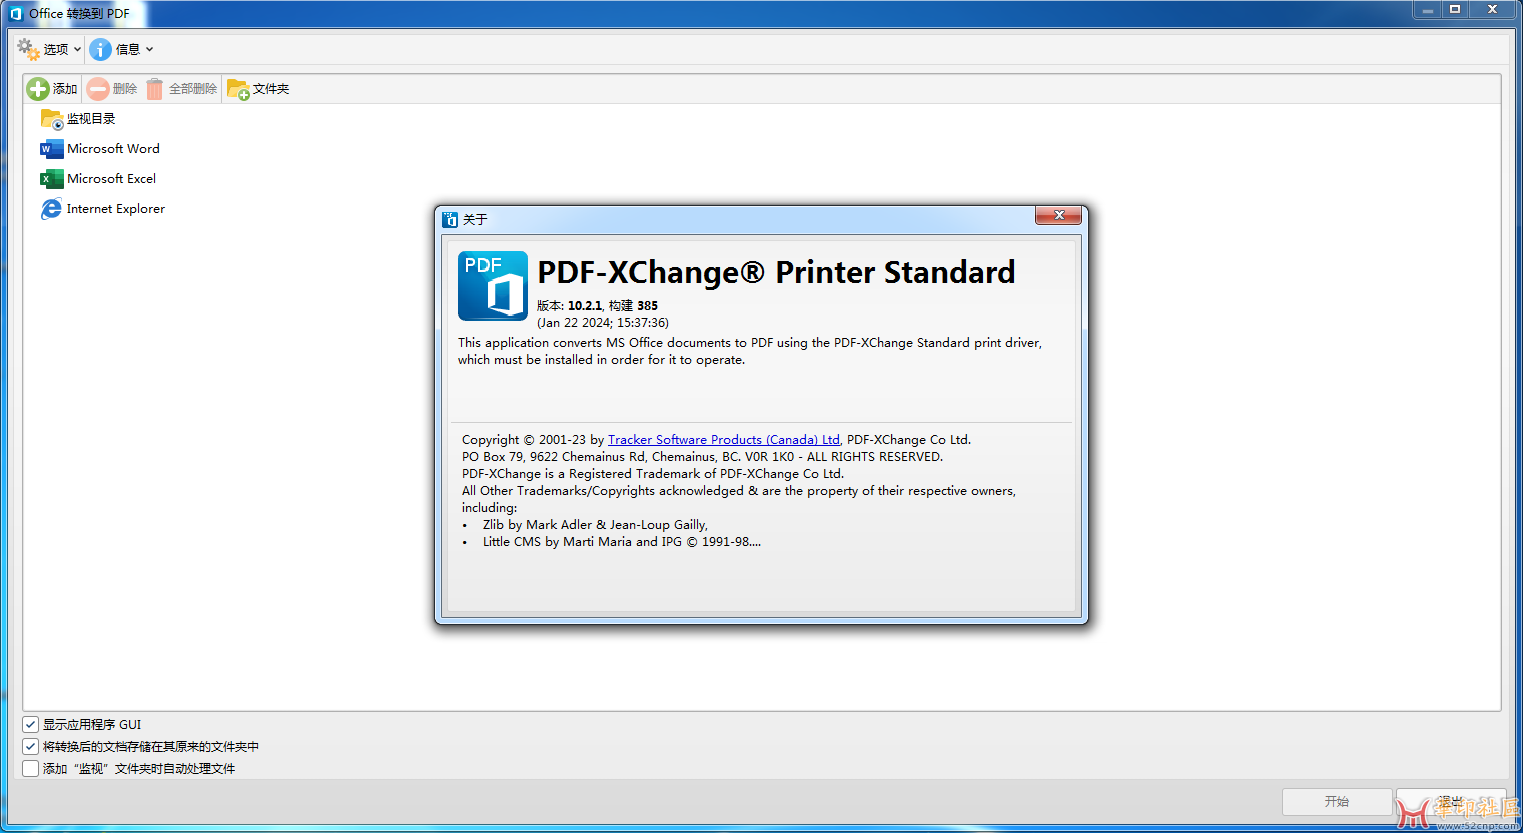 PDF-XChange Pro 10.2.1.385.0 x64 中文版{tag}(4)